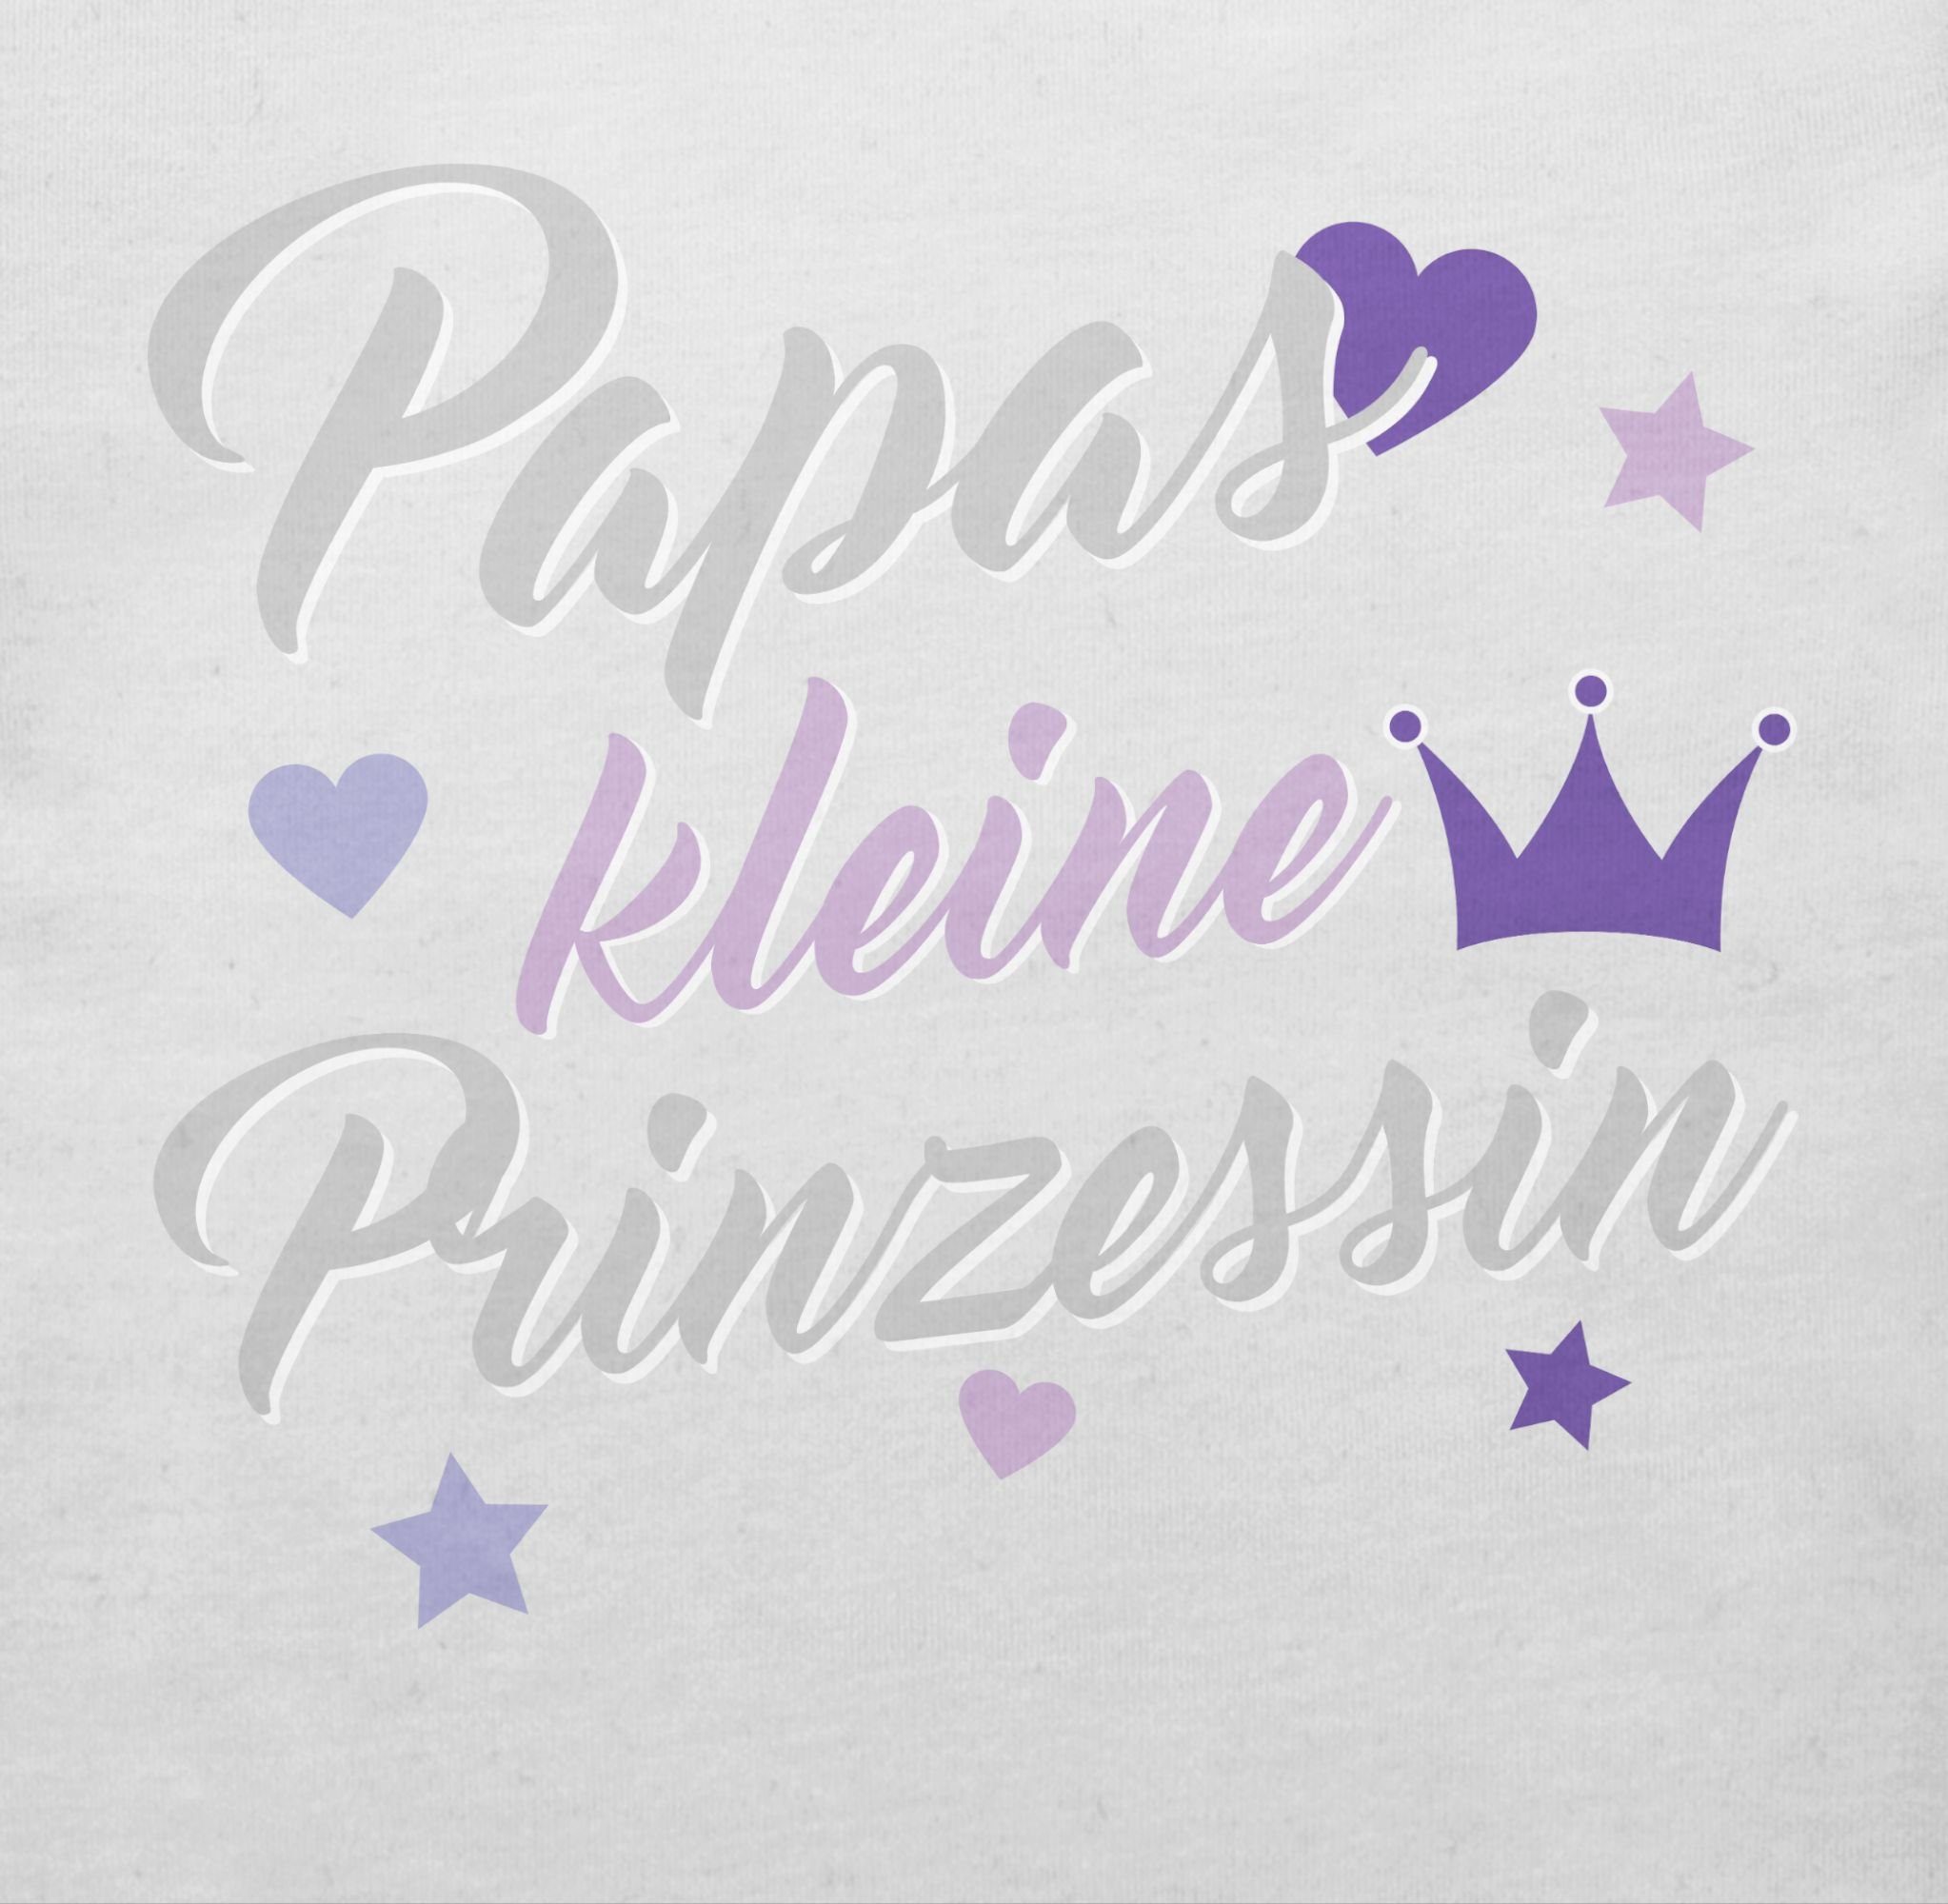 Shirtracer T-Shirt Baby kleine Geschenk Papas Weiß Vatertag Prinzessin 2